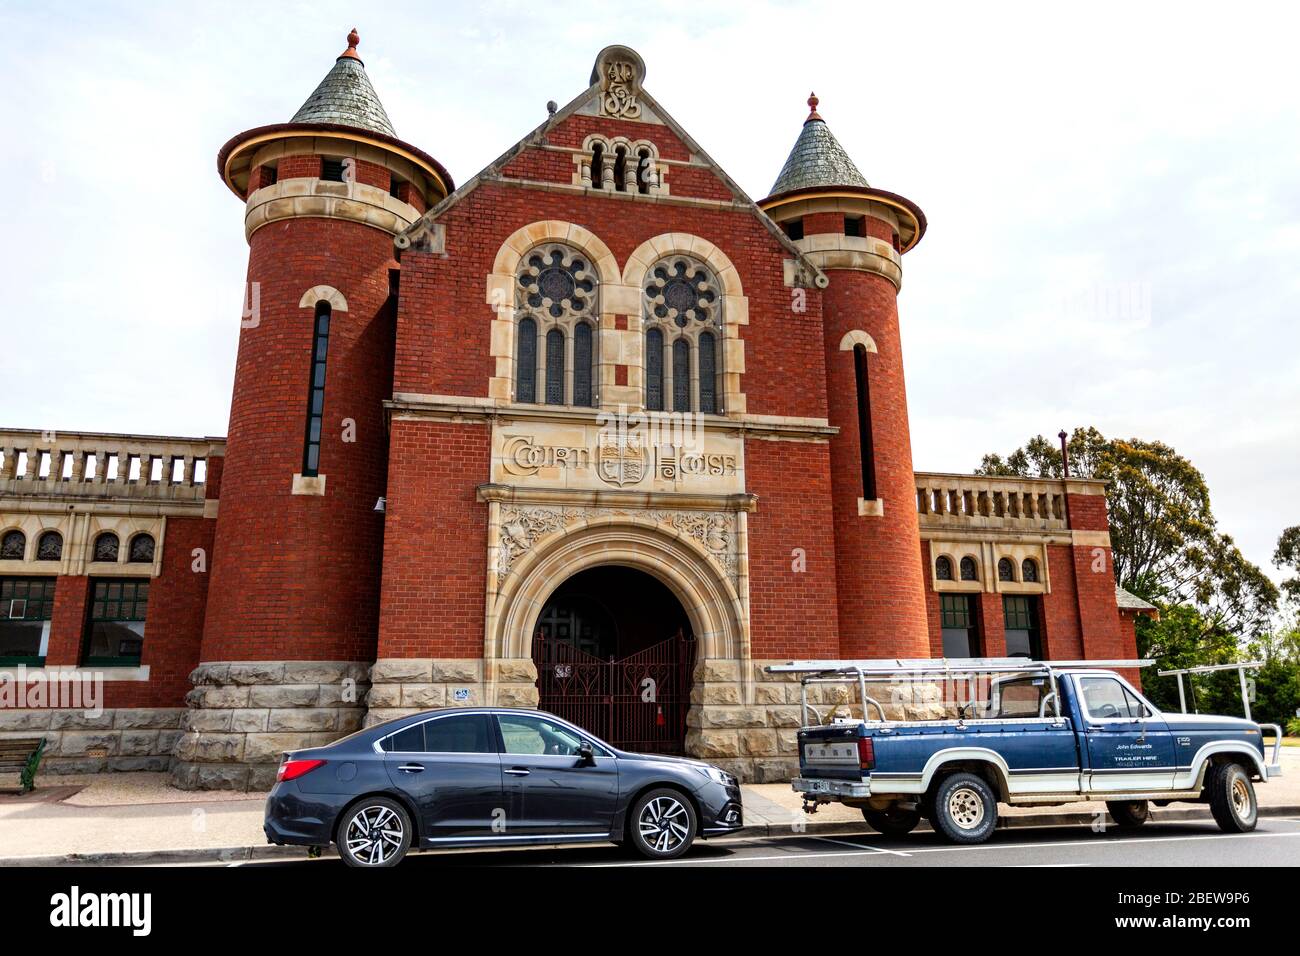 Façade de la court House construite en 1893 dans un style roman extravagant de la Fédération, à Bairnsdale, Victoria, Australie Banque D'Images